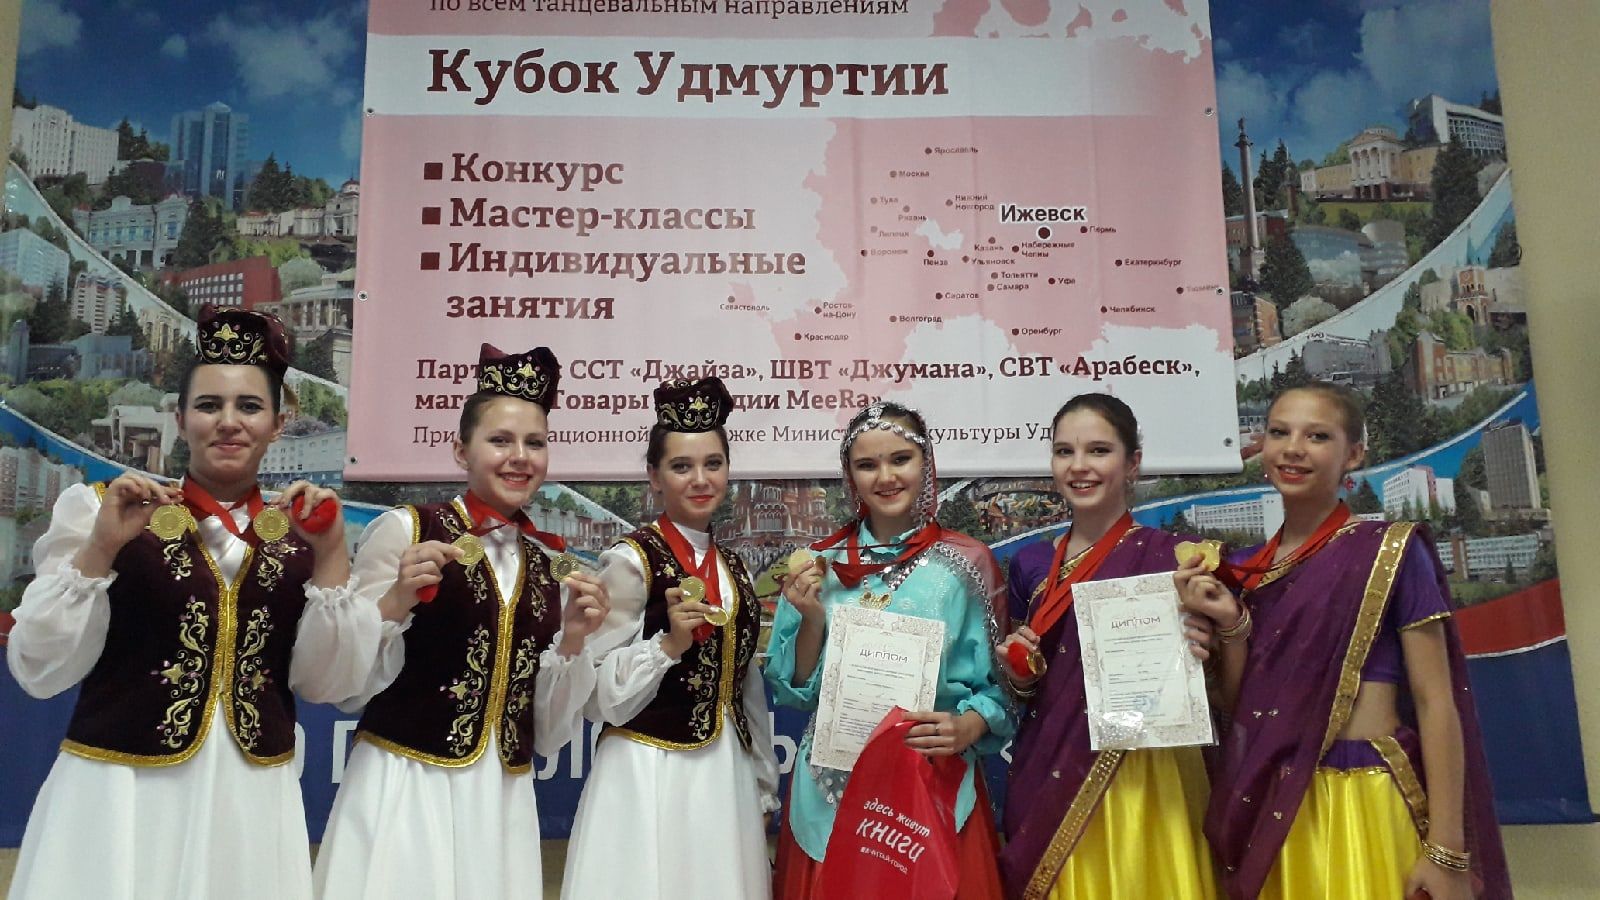 Танцевальные коллективы Бугульмы победили в конкурсе "Кубок Удмуртии 2021"